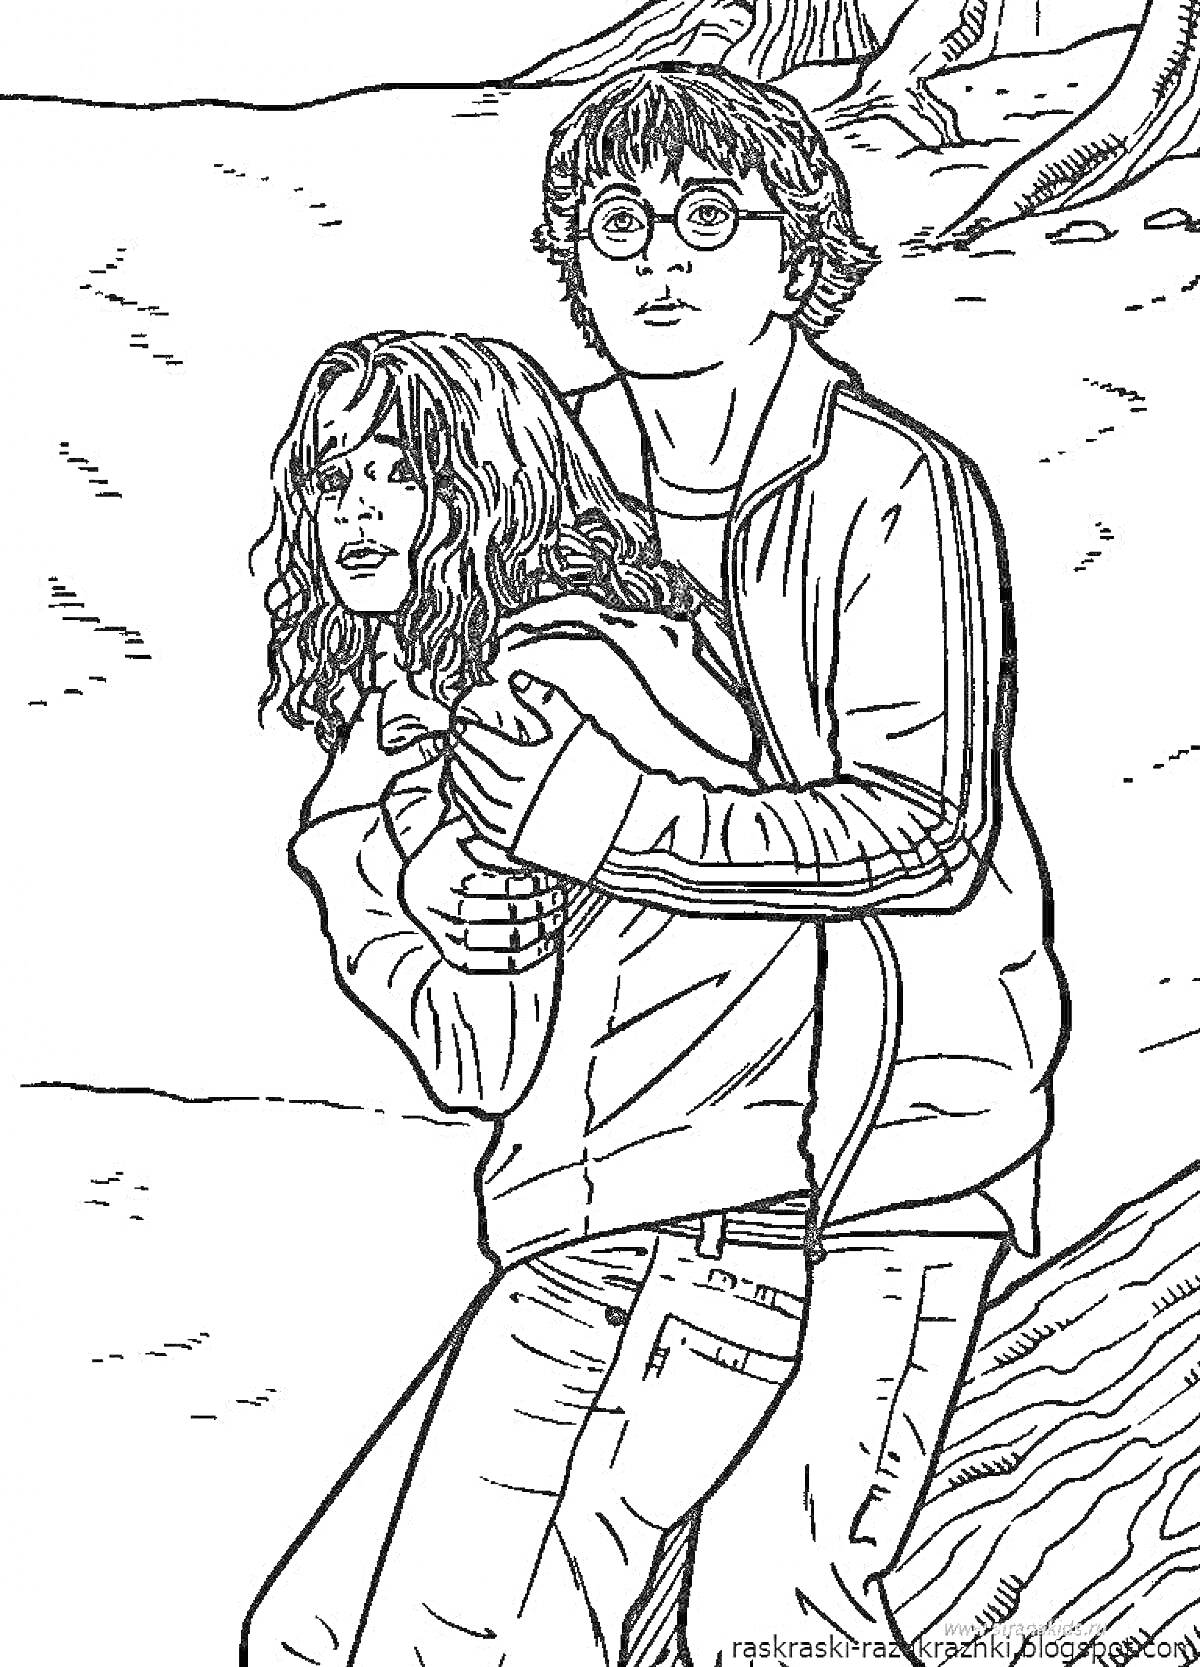 Раскраска Два персонажа: юноша в очках и девушка, он обнимает её сзади, они на фоне природы